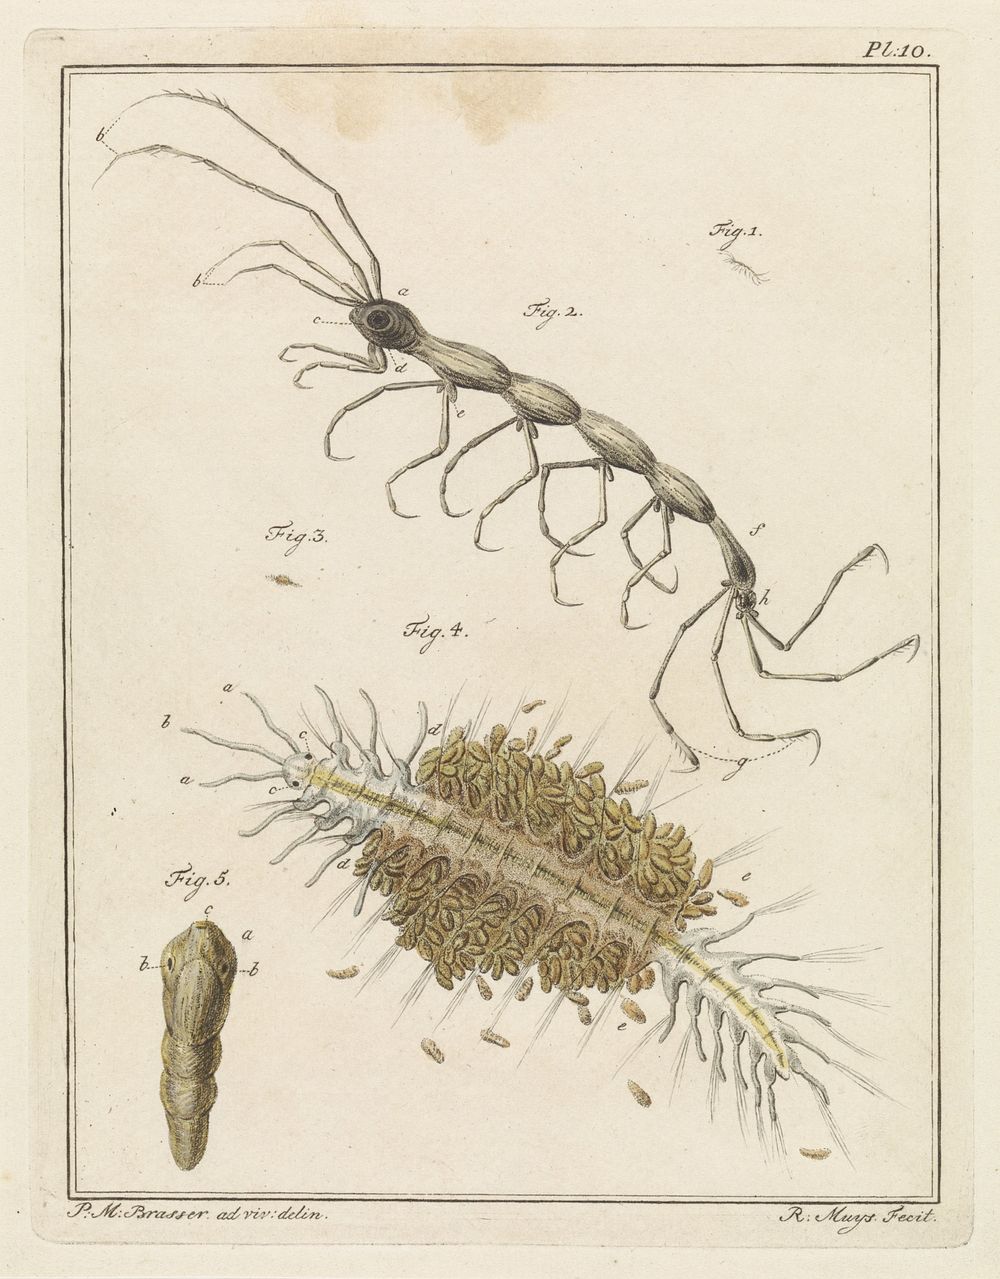 Teringlijdertje en een borstelworm (1778) by Robbert Muys and P M Brasser